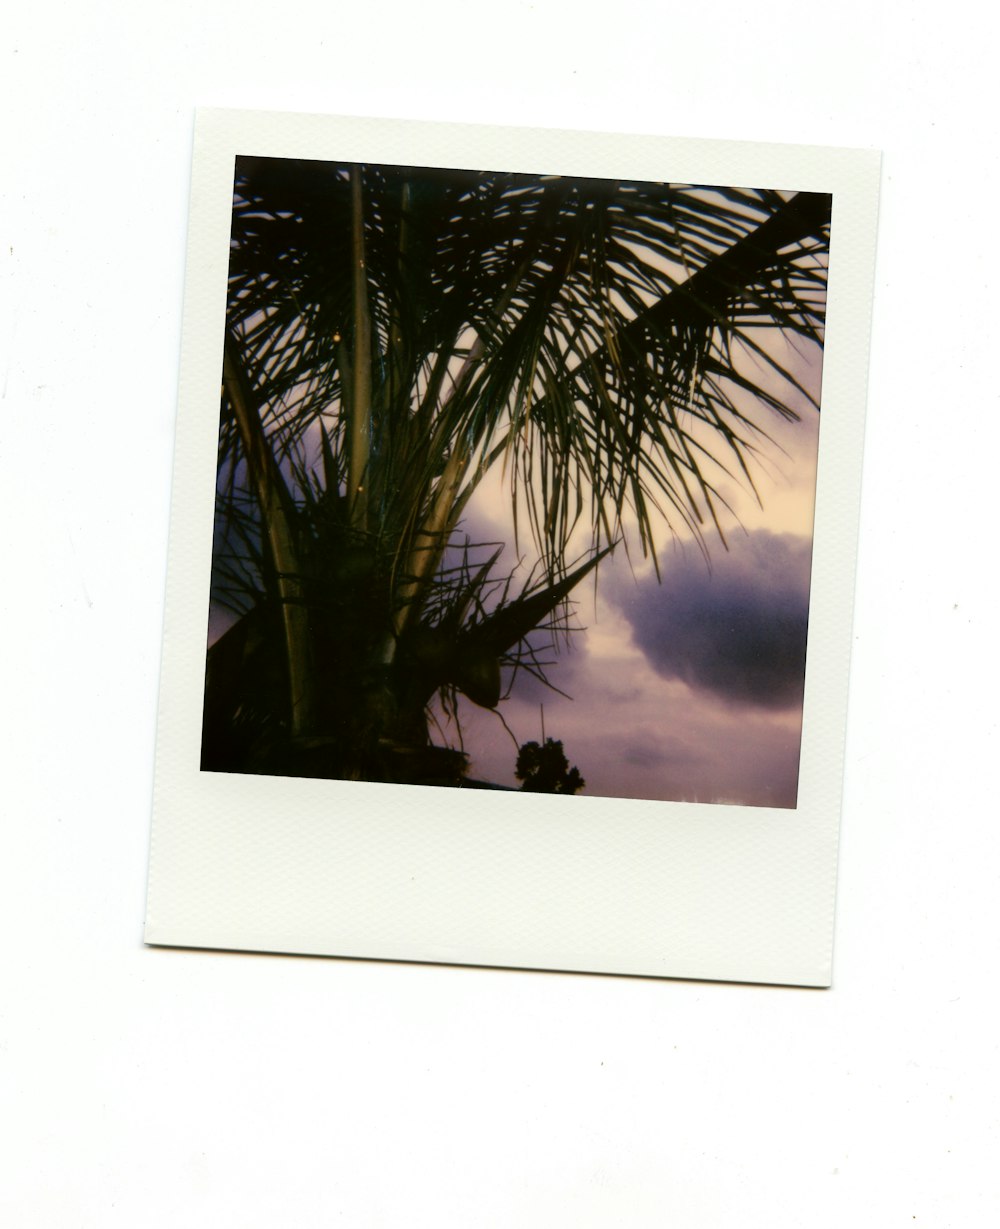 palmier vert sous ciel bleu